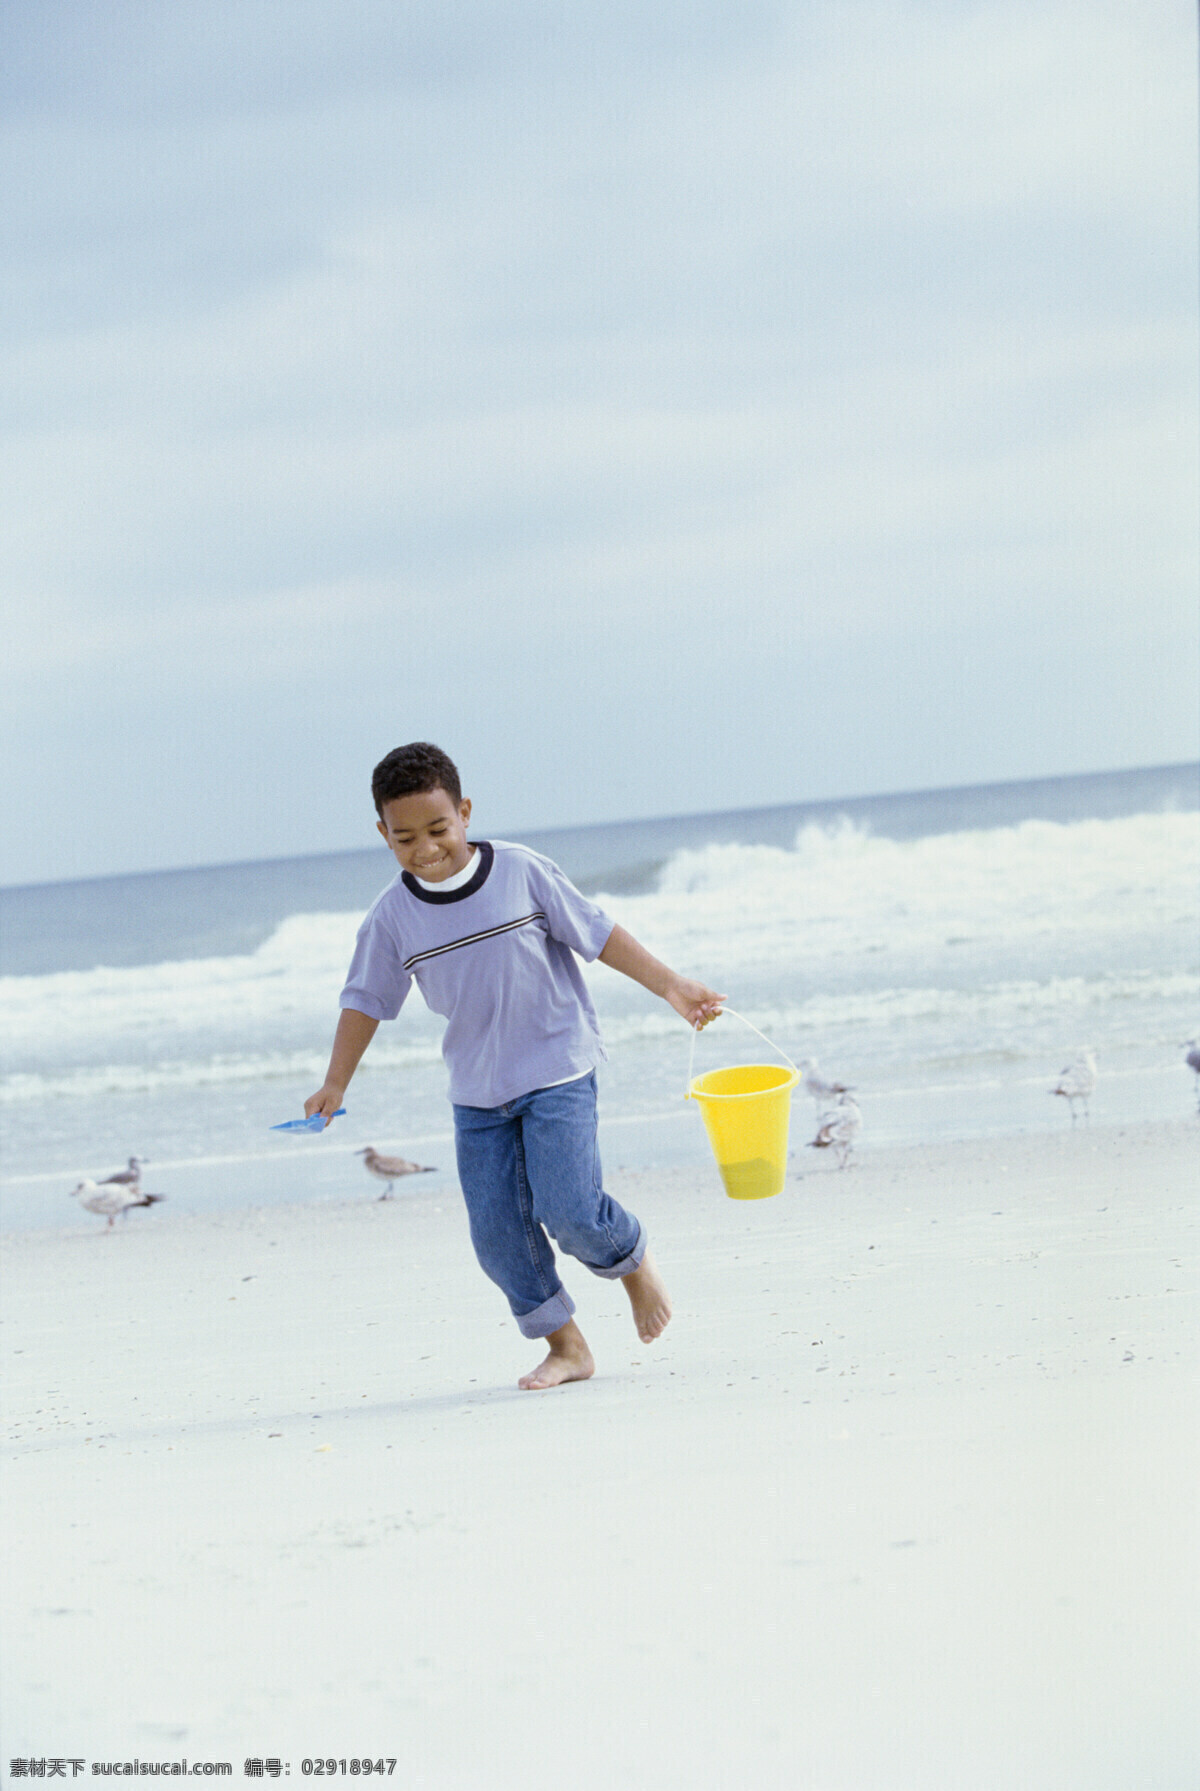 提 水桶 小 男孩 海边人物 沙滩 海滩 外国儿童 小男孩 黑人儿童 沙子 海鸥 大海 海浪 生活人物 人物图片